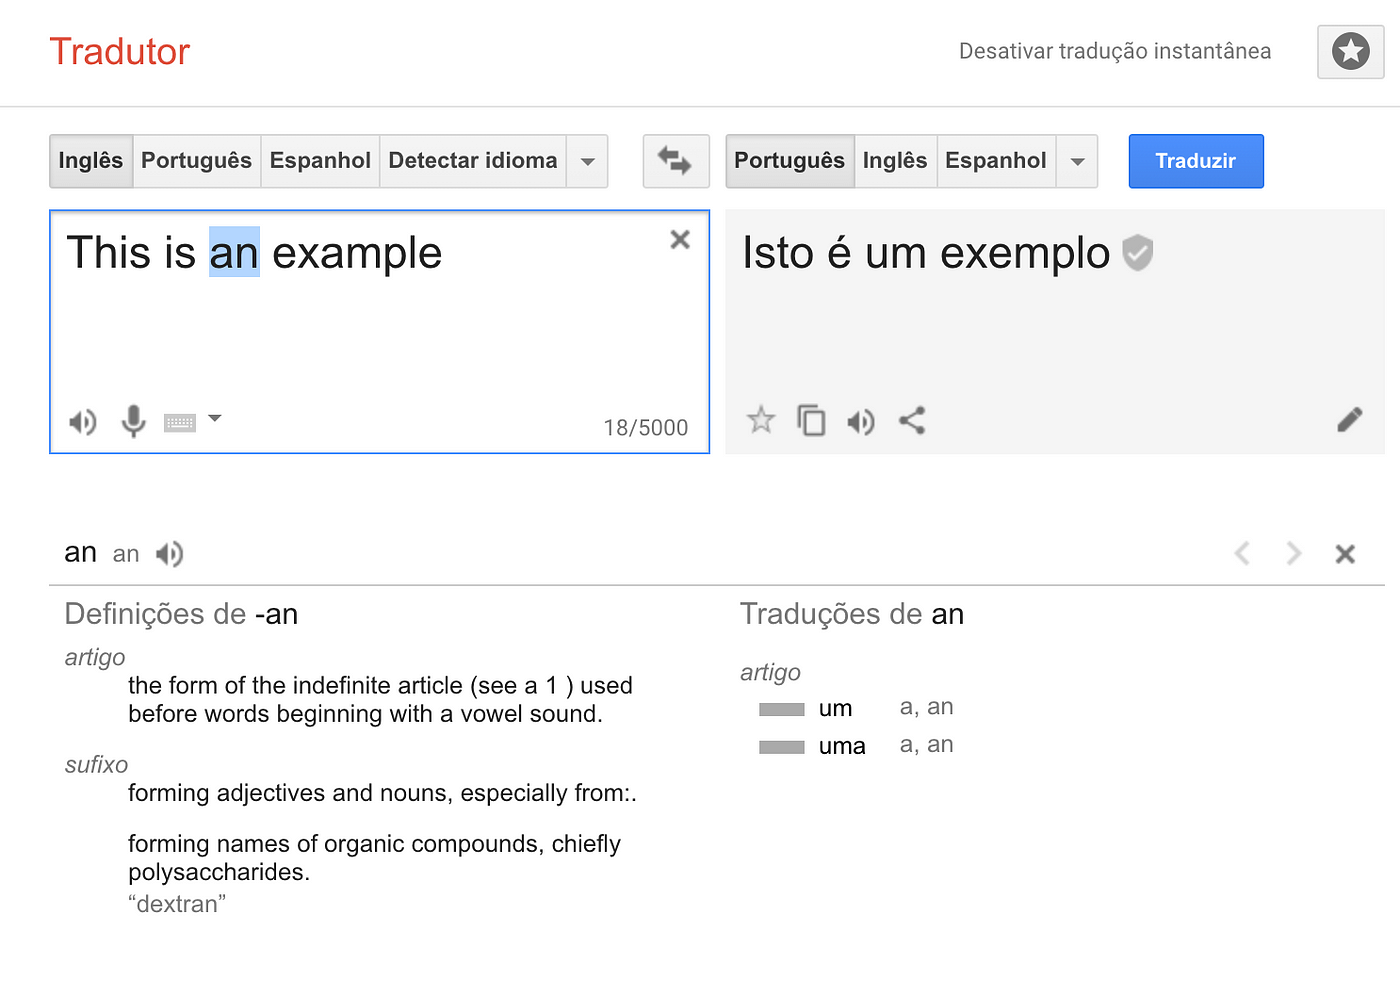 Como usar o Google Tradutor? Veja tudo sobre a ferramenta de tradução